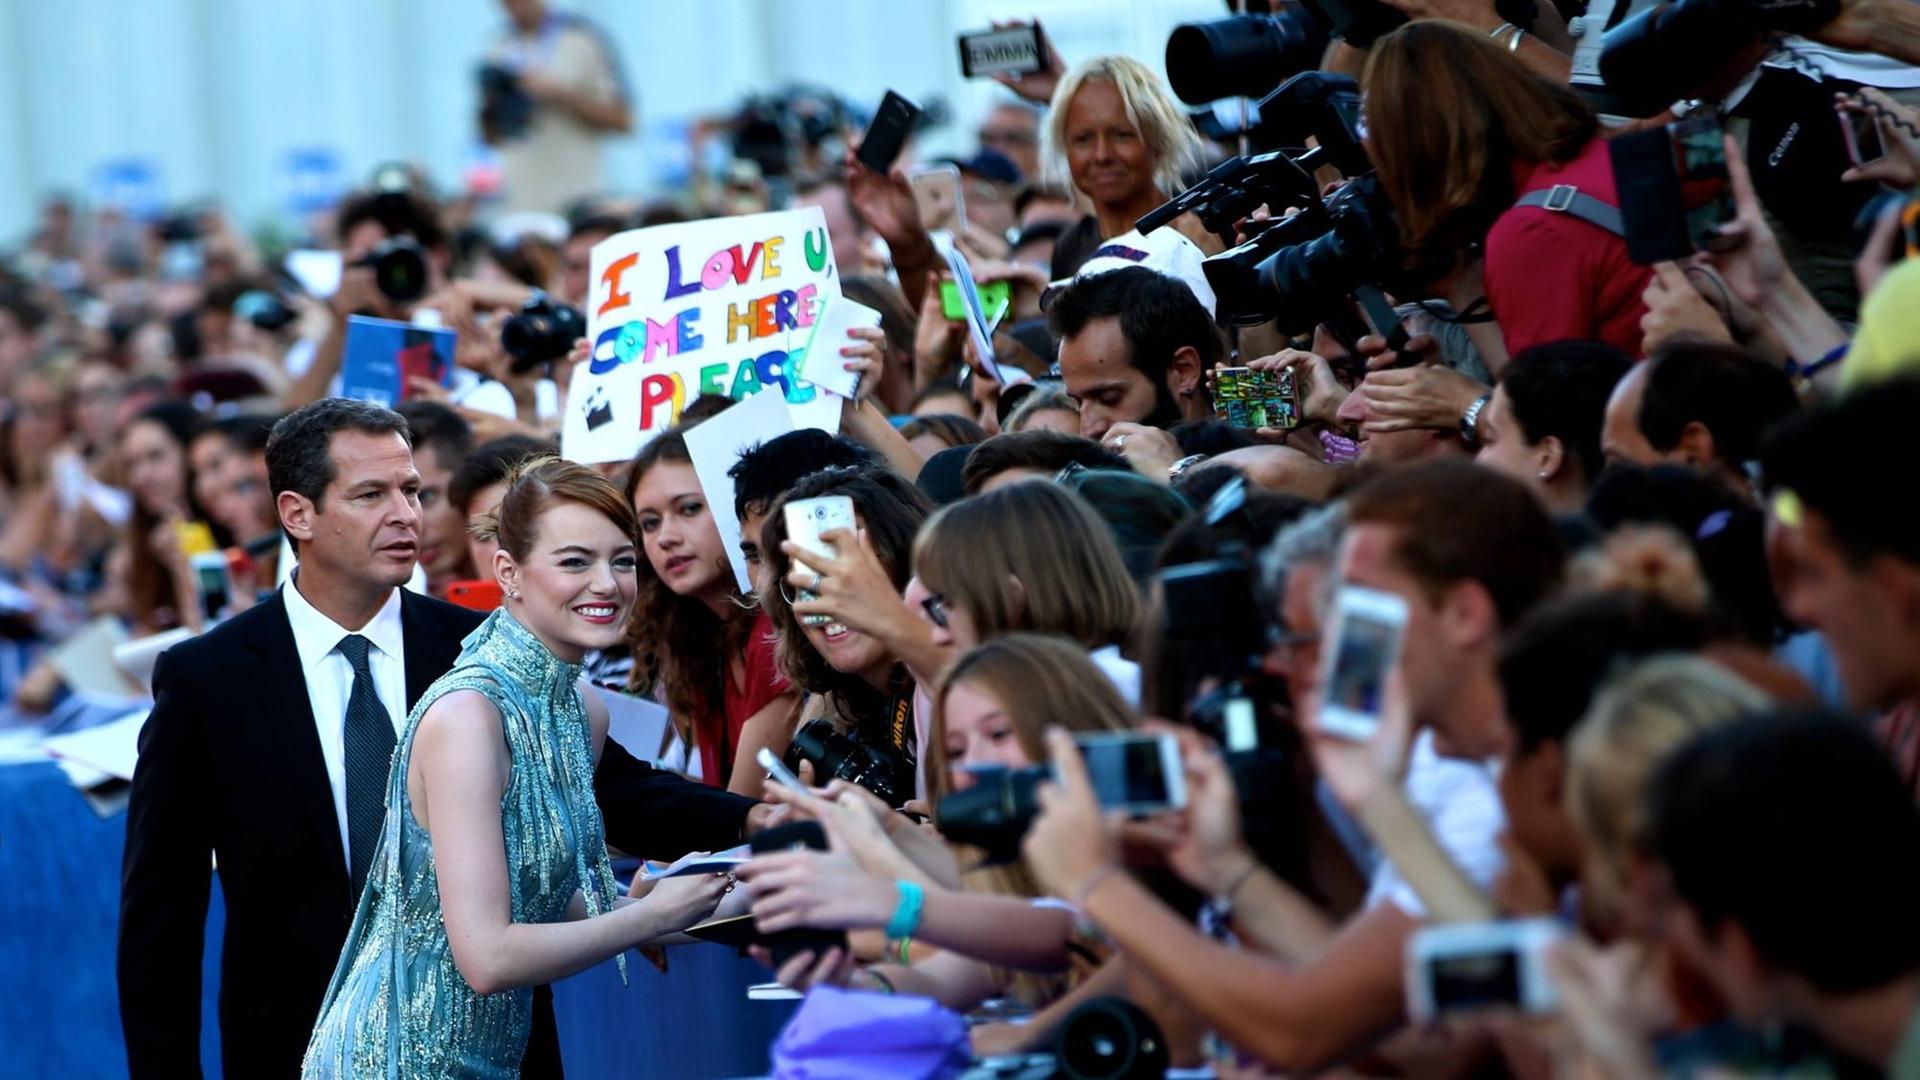 Die Schauspielerin Emma Stone wird auf dem roten Teppich von Fans umjubelt.